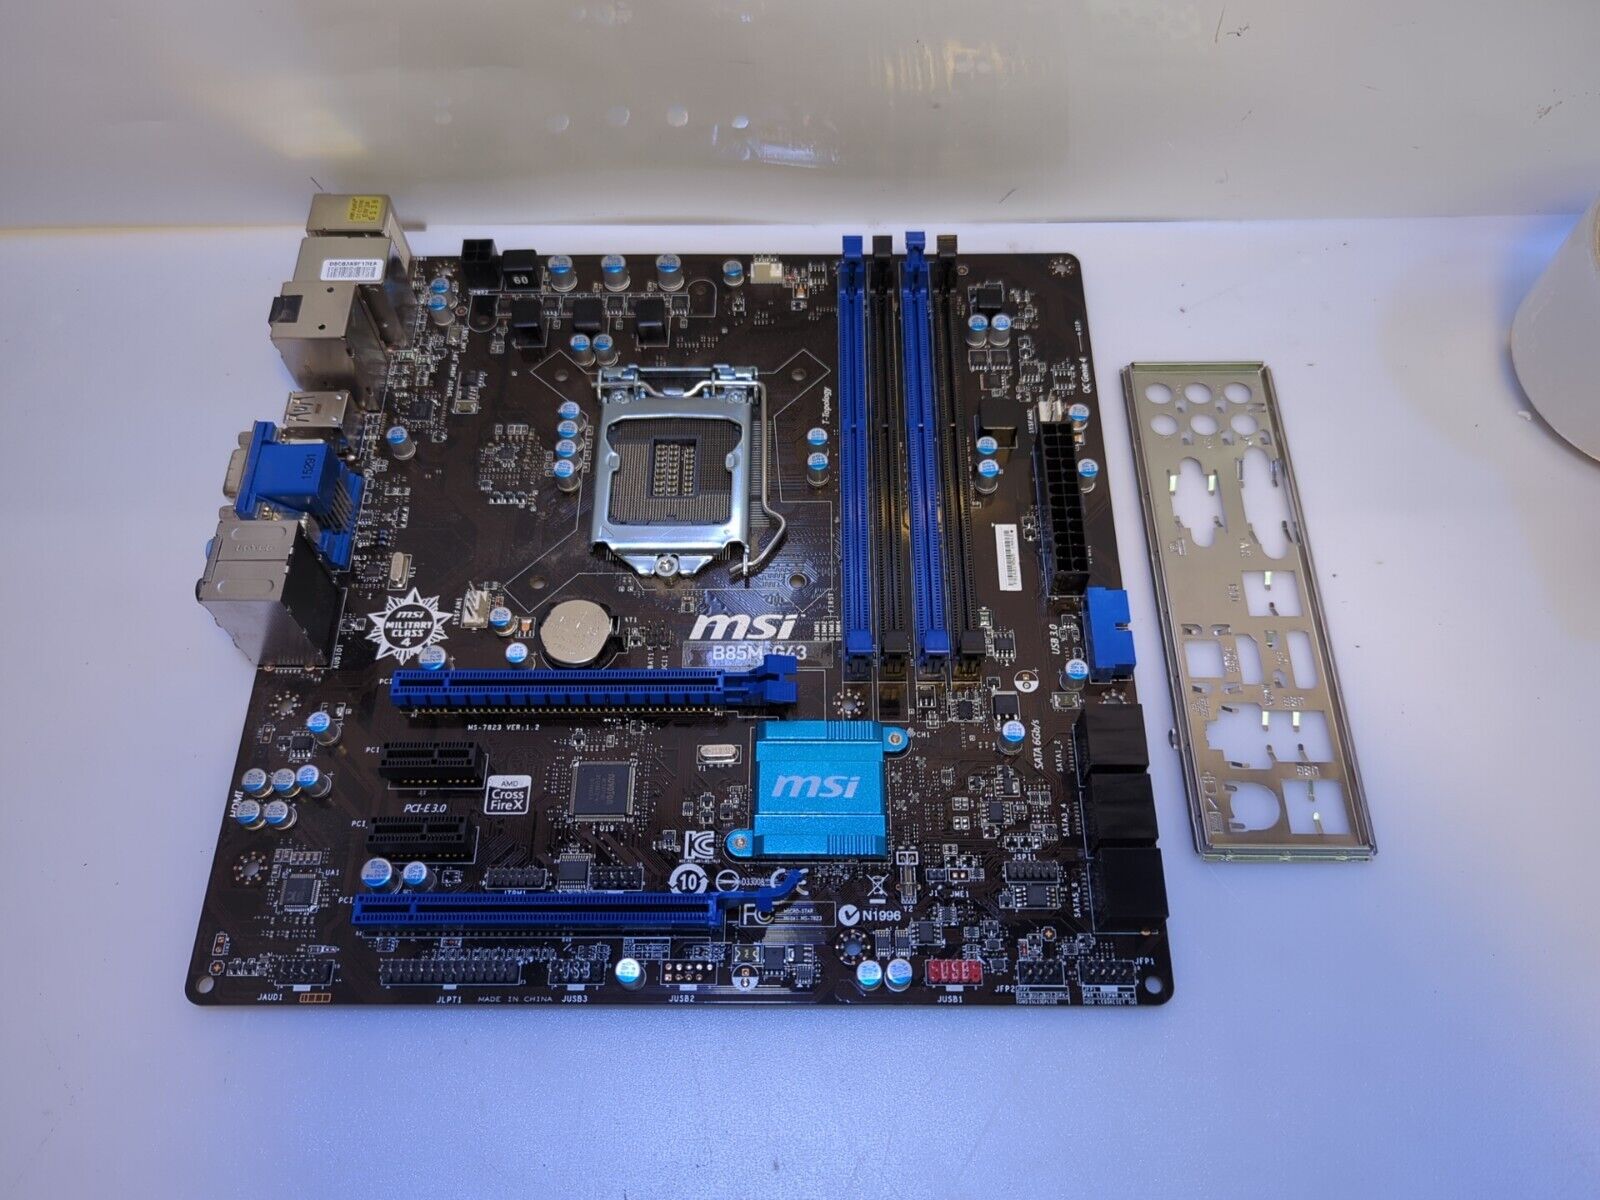 - MSI B85M-G43 M-ATX LGA 1150 Intel B85 DDR3 HDMI/DP USB3.0 Motherboard 